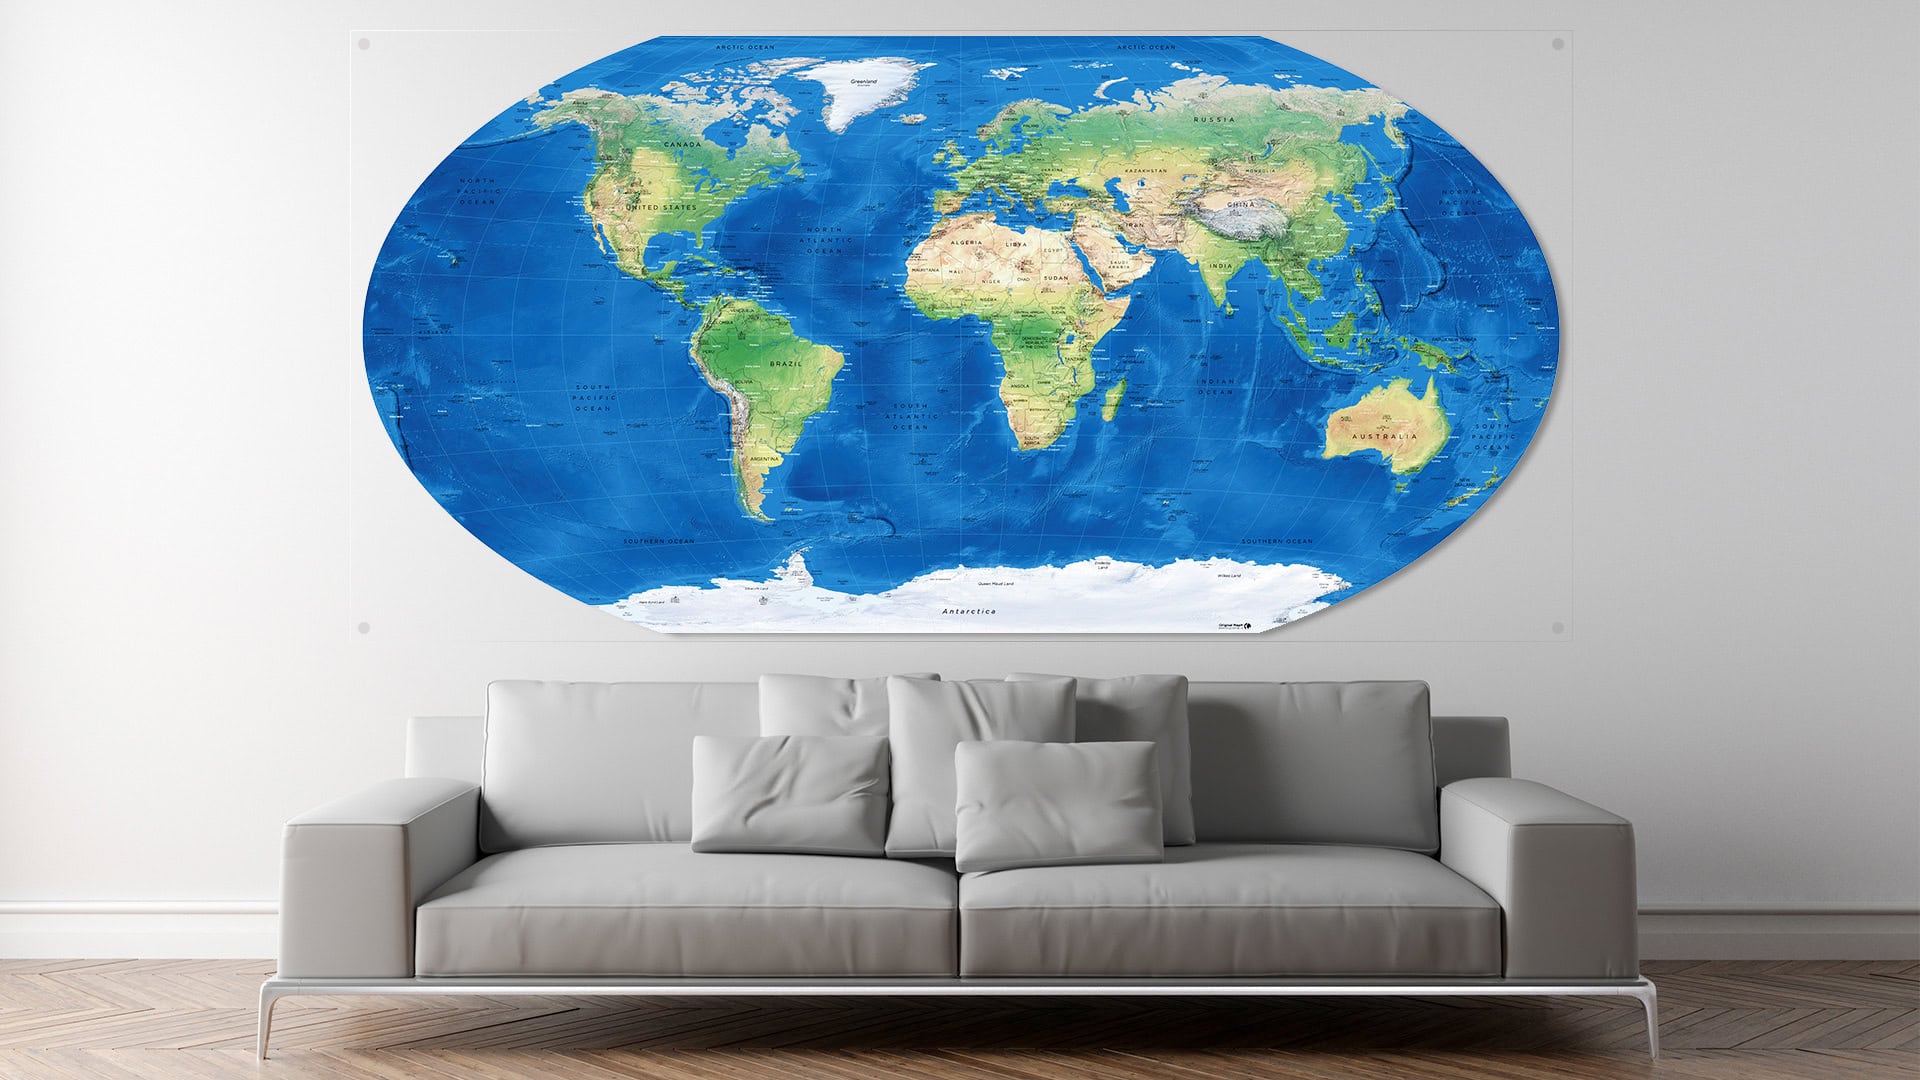 Winkel-Tripel Projection World Map